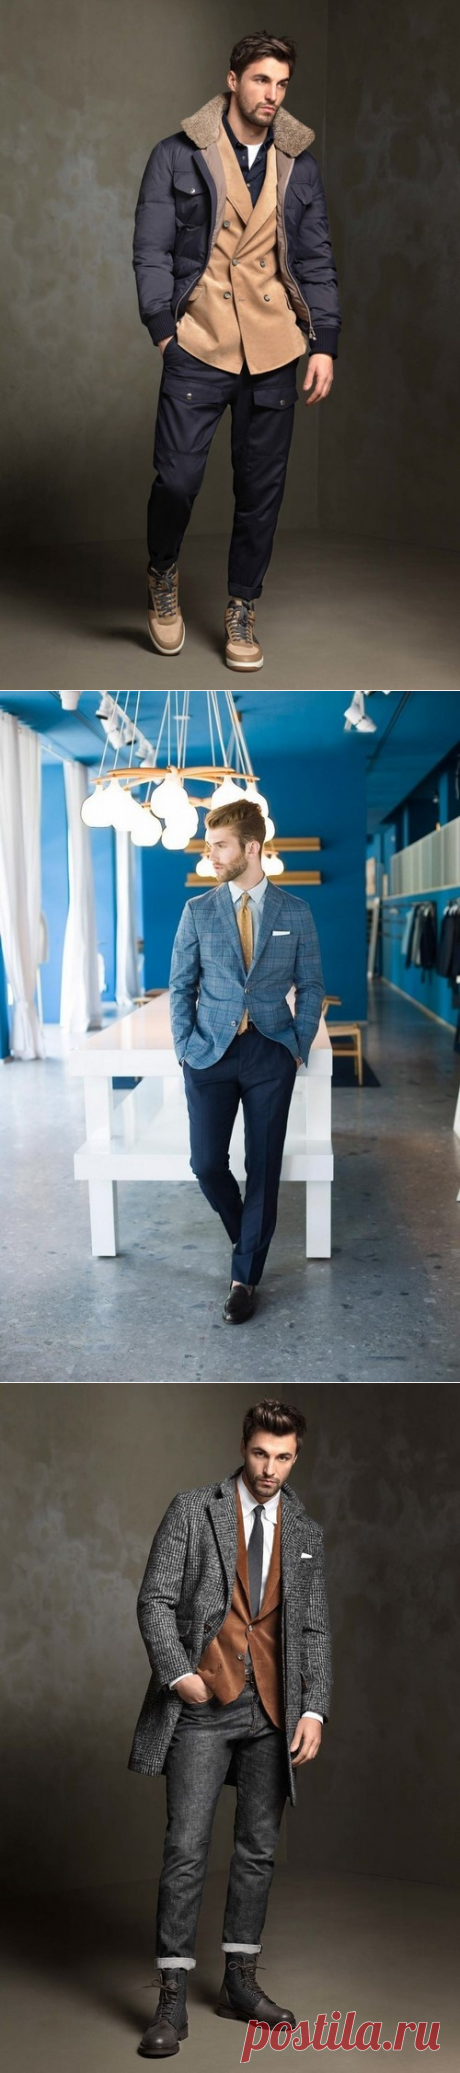 Модная мужская одежда 2018-2019 - фото, тенденции, фасоны, идеи стильного гардероба